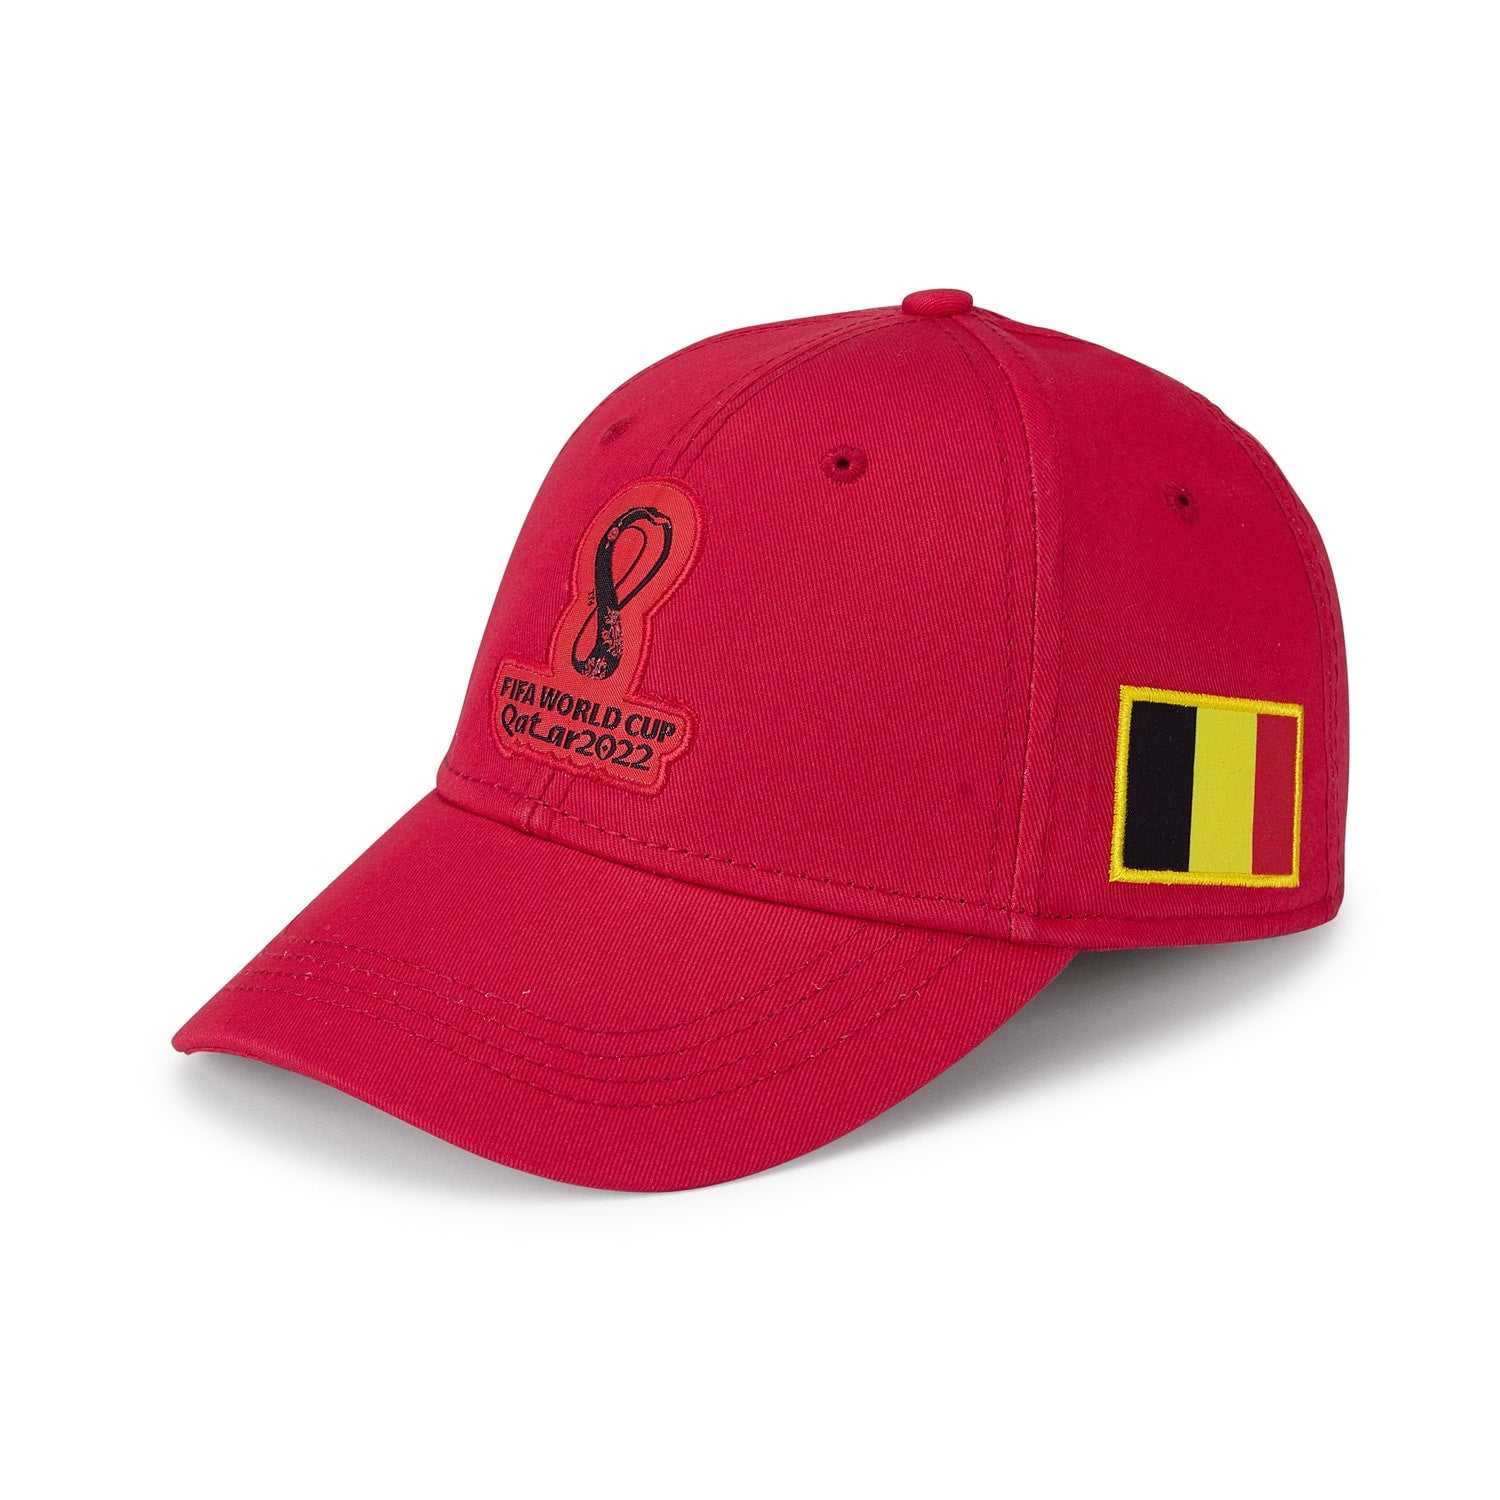 2022 World Cup Belgium Red Cap - Mens